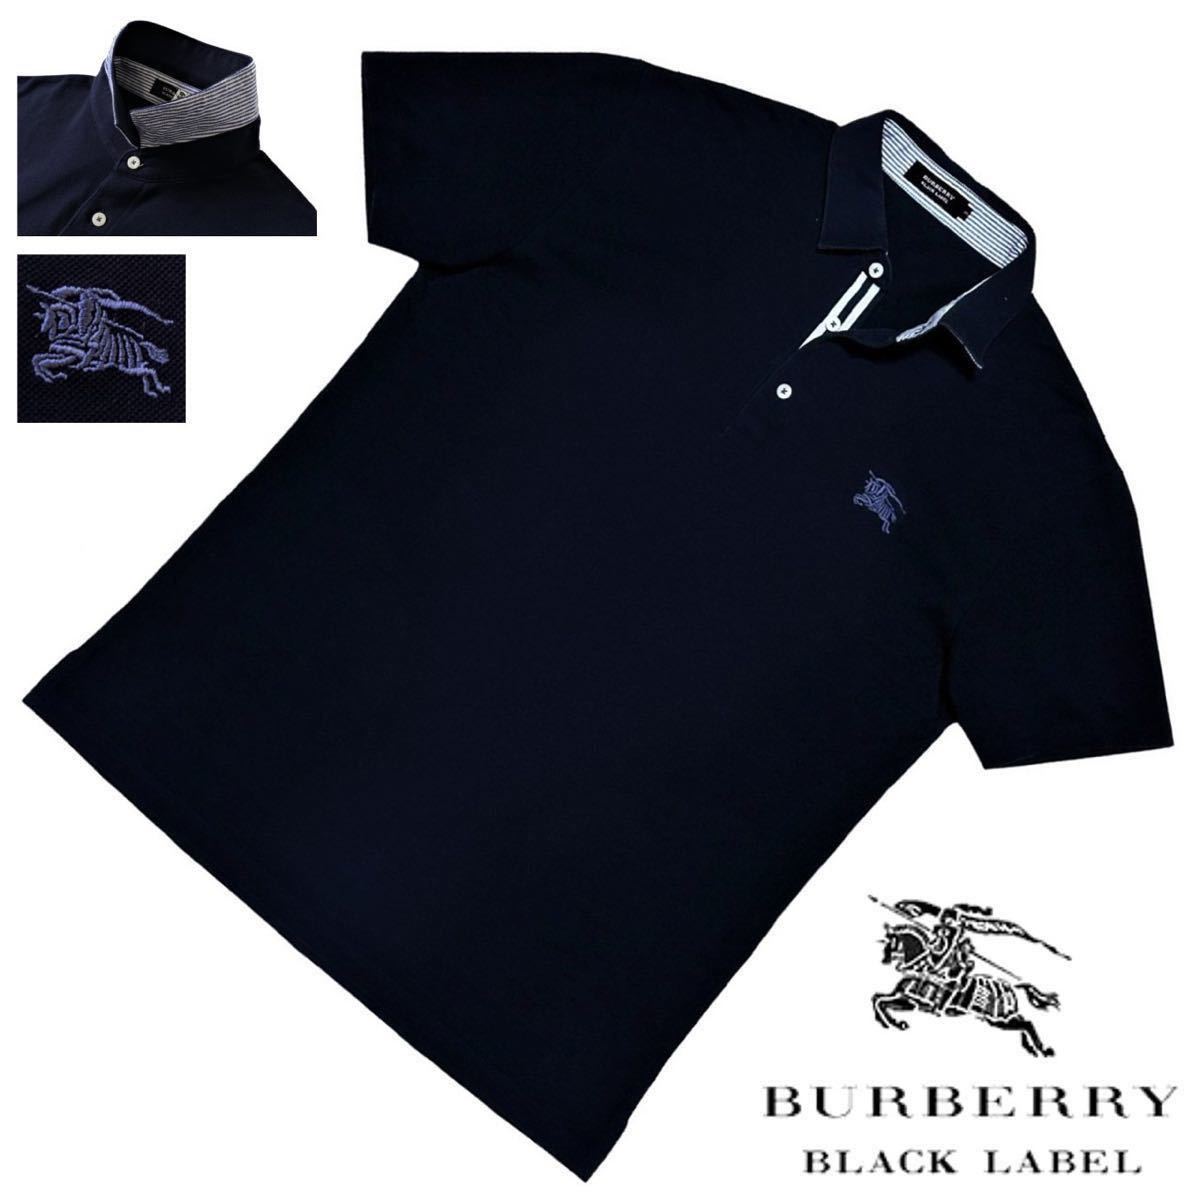  редкий L! превосходный товар сделано в Японии Burberry Black Label шланг вышивка гребень шлема полоса окантовка олень. . рубашка-поло 3/L темно-синий BURBERRY BLACK LABEL